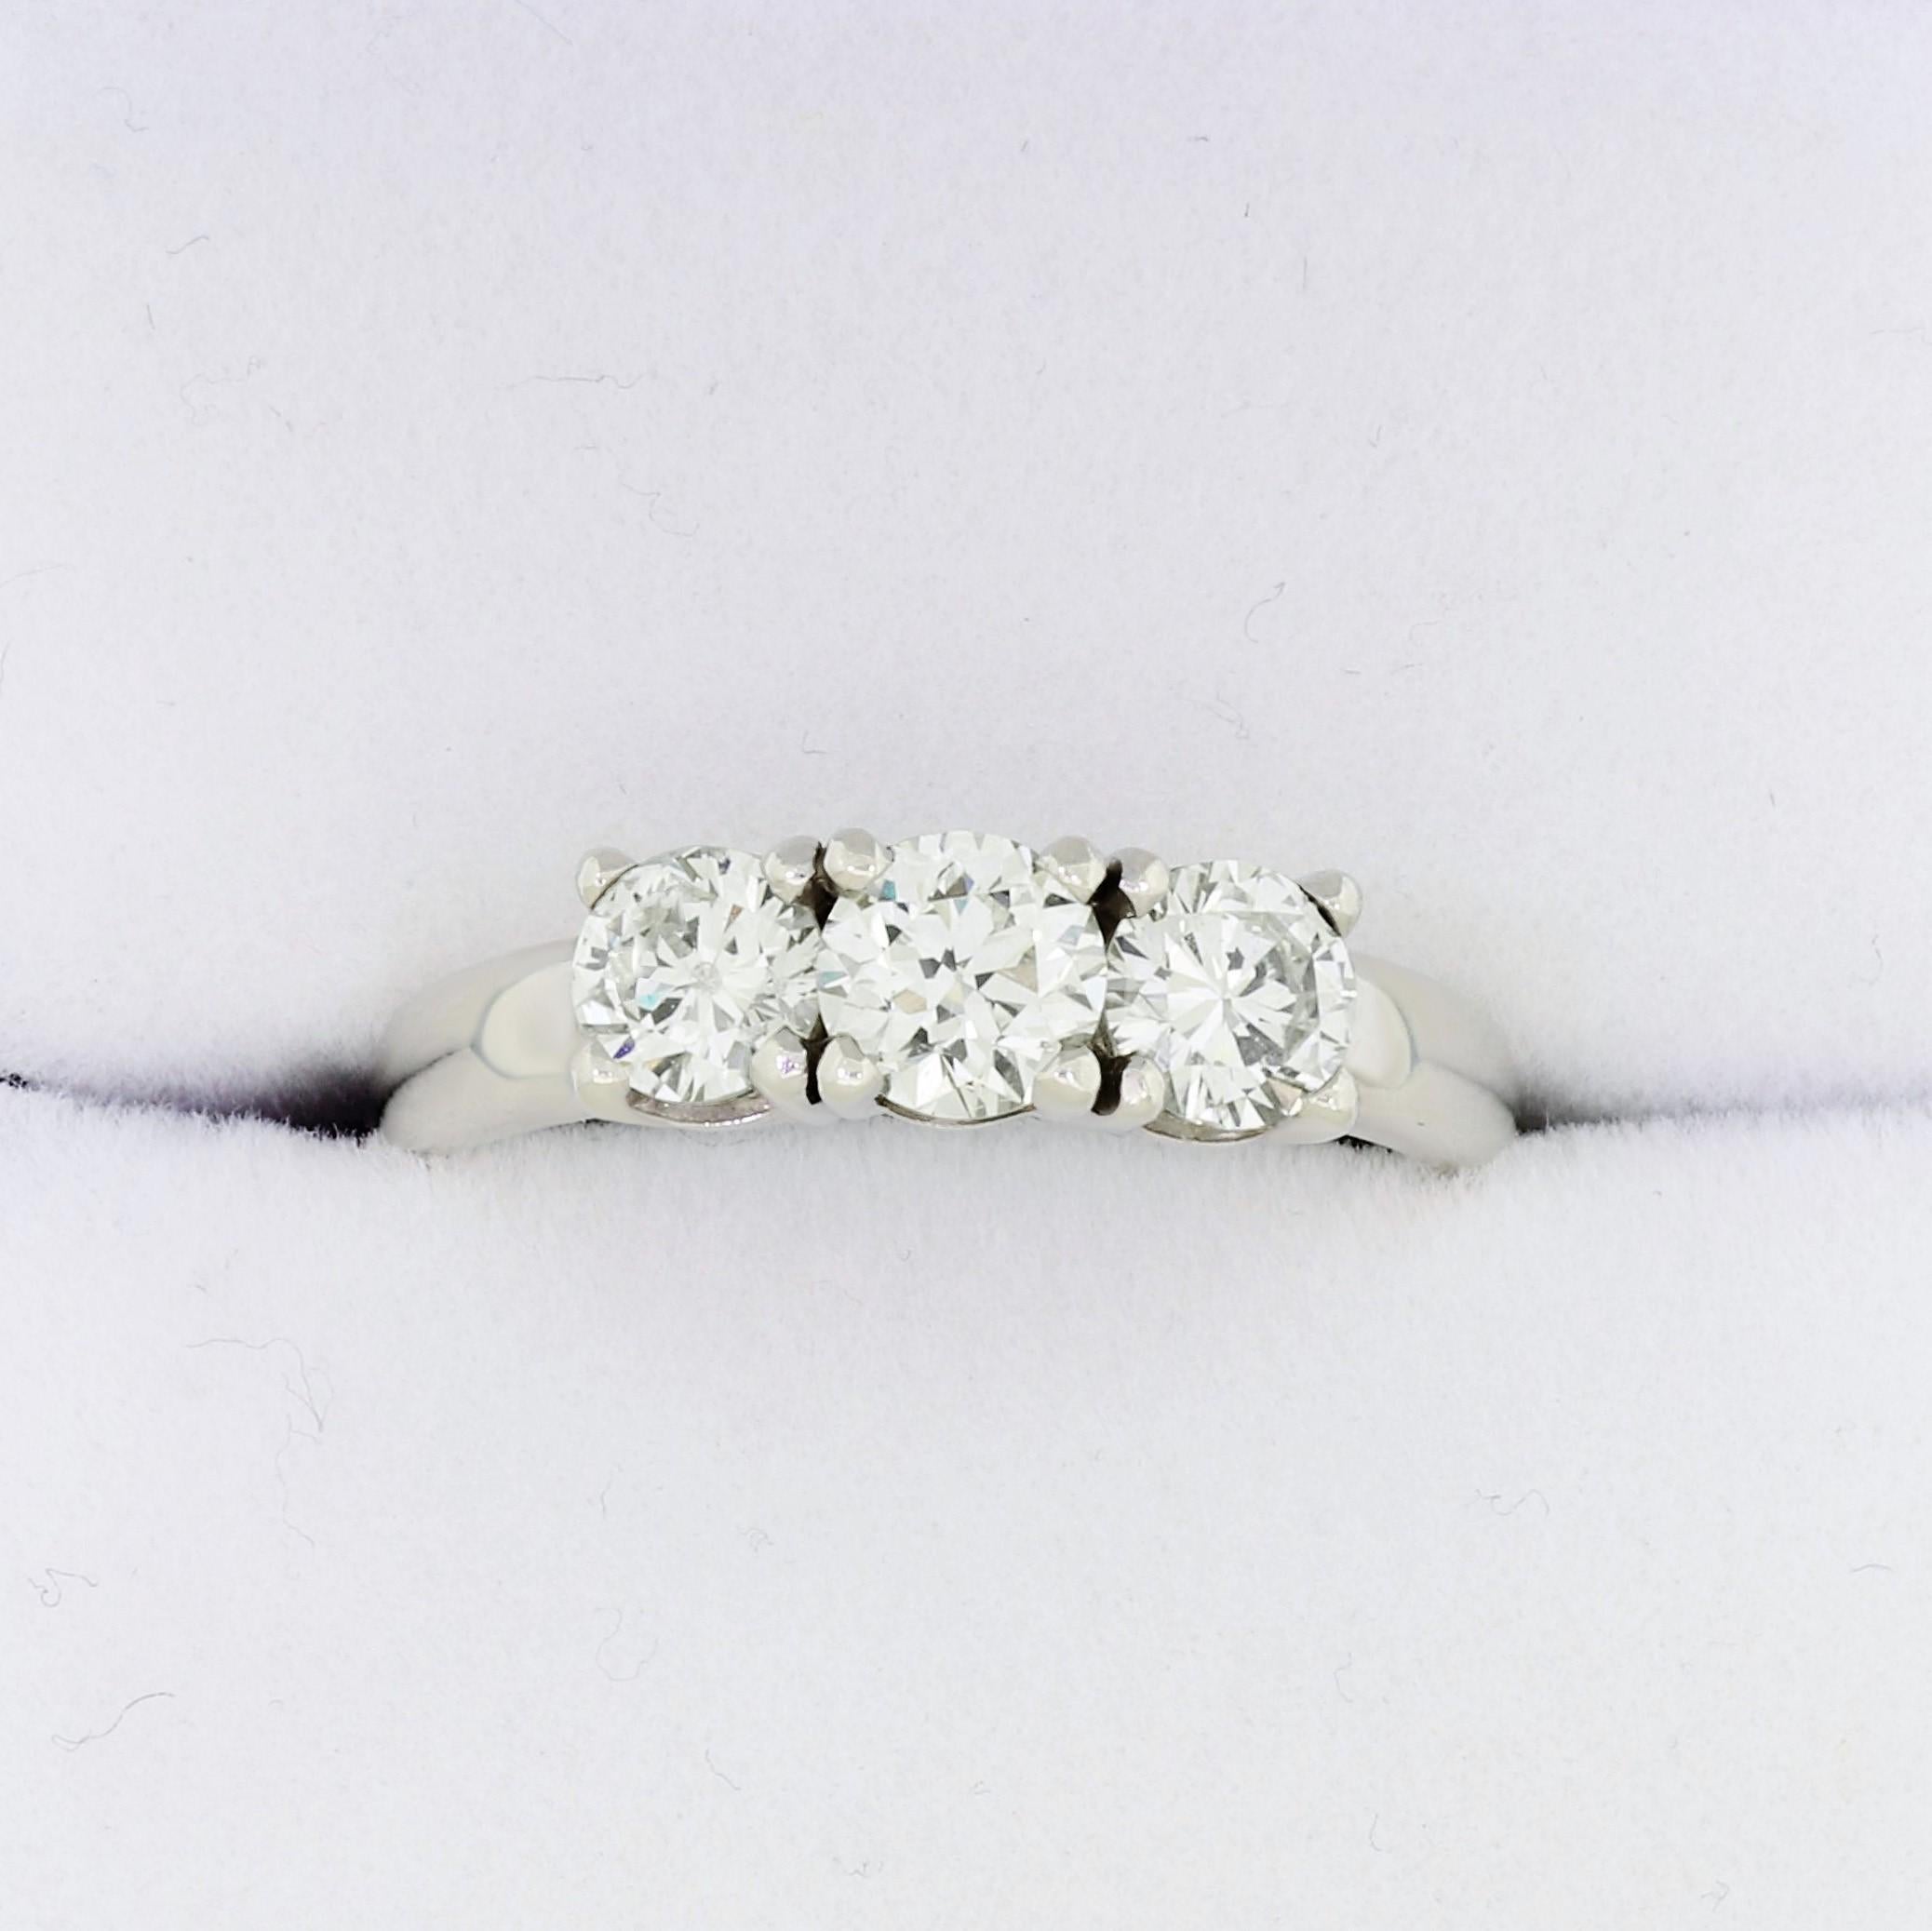 Beeindruckender 3-Stein-Ring aus 14-karätigem Weißgold mit 3 perfekt aufeinander abgestimmten Diamanten im Rundschliff, die einen unglaublichen Blickfang darstellen. Unsere konservative Schätzung für alle Diamanten zusammen beträgt 1,30 Karat,